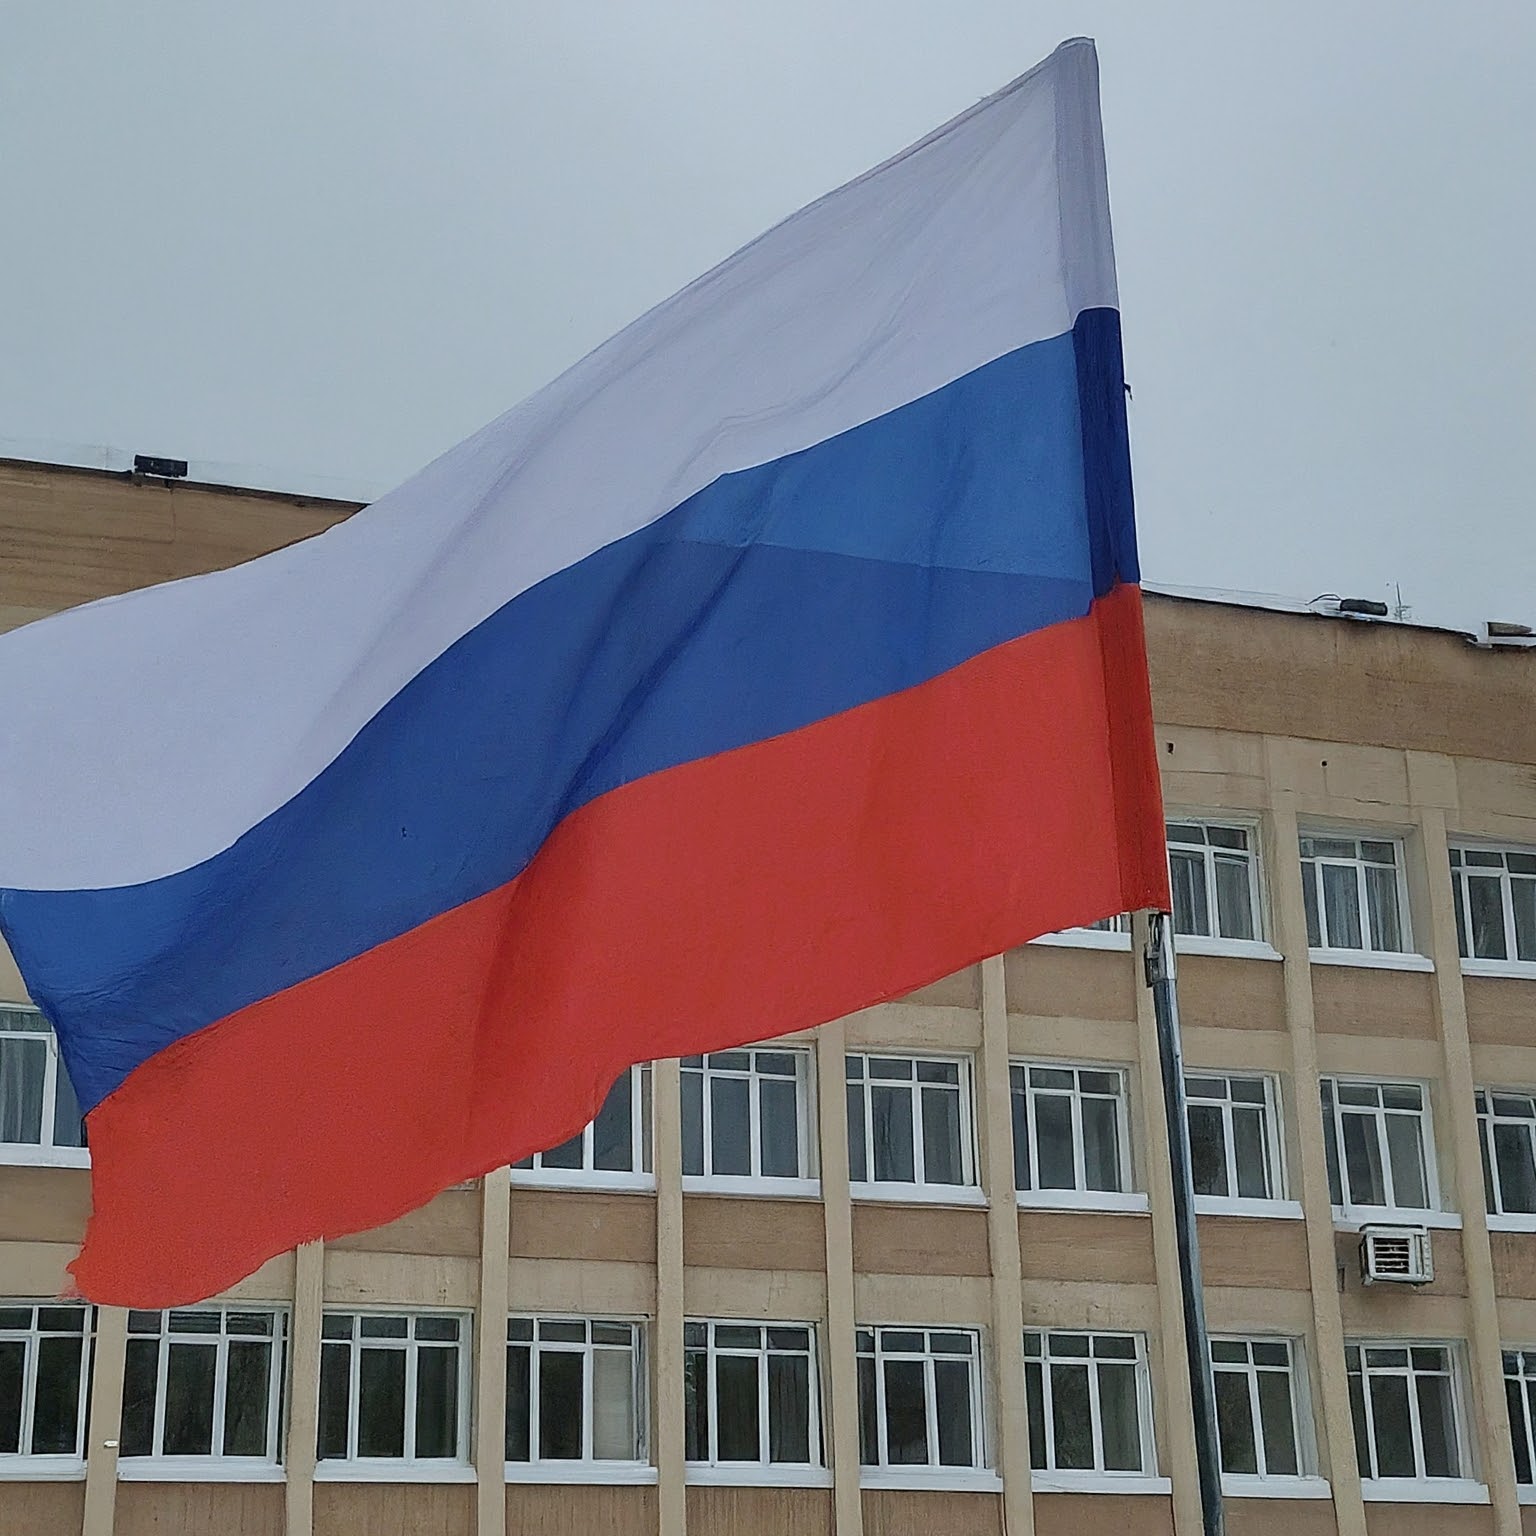 Госдума приняла закон об обязательном вывешивании Государственного флага в образовательных учреждениях